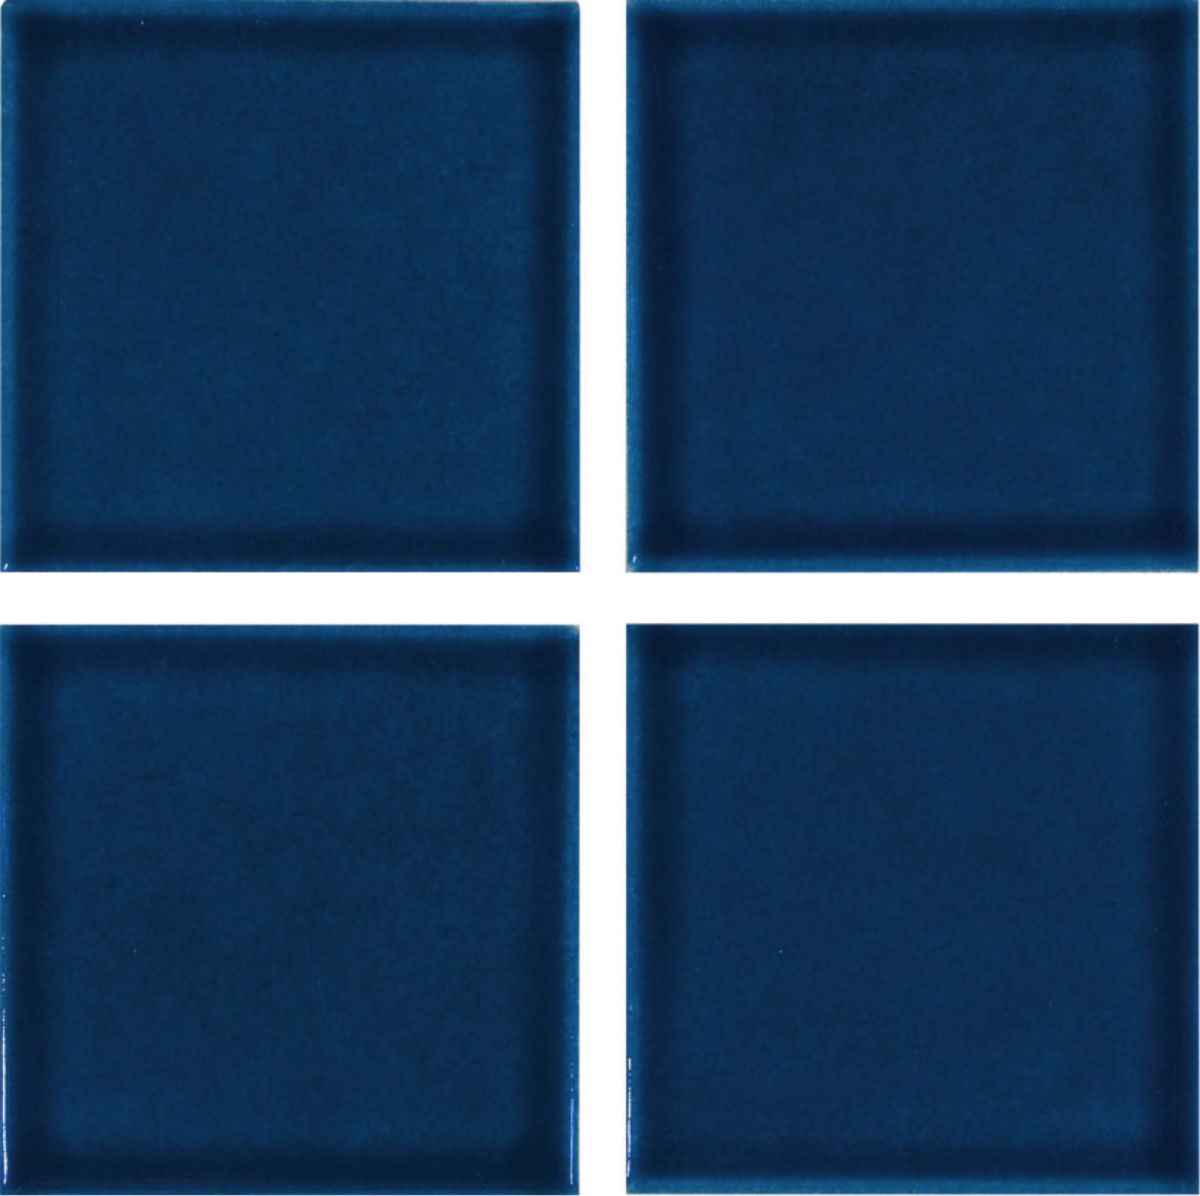 Marine Ocean Blue 3x3, National Pool Tile | Ctileplusonline.com